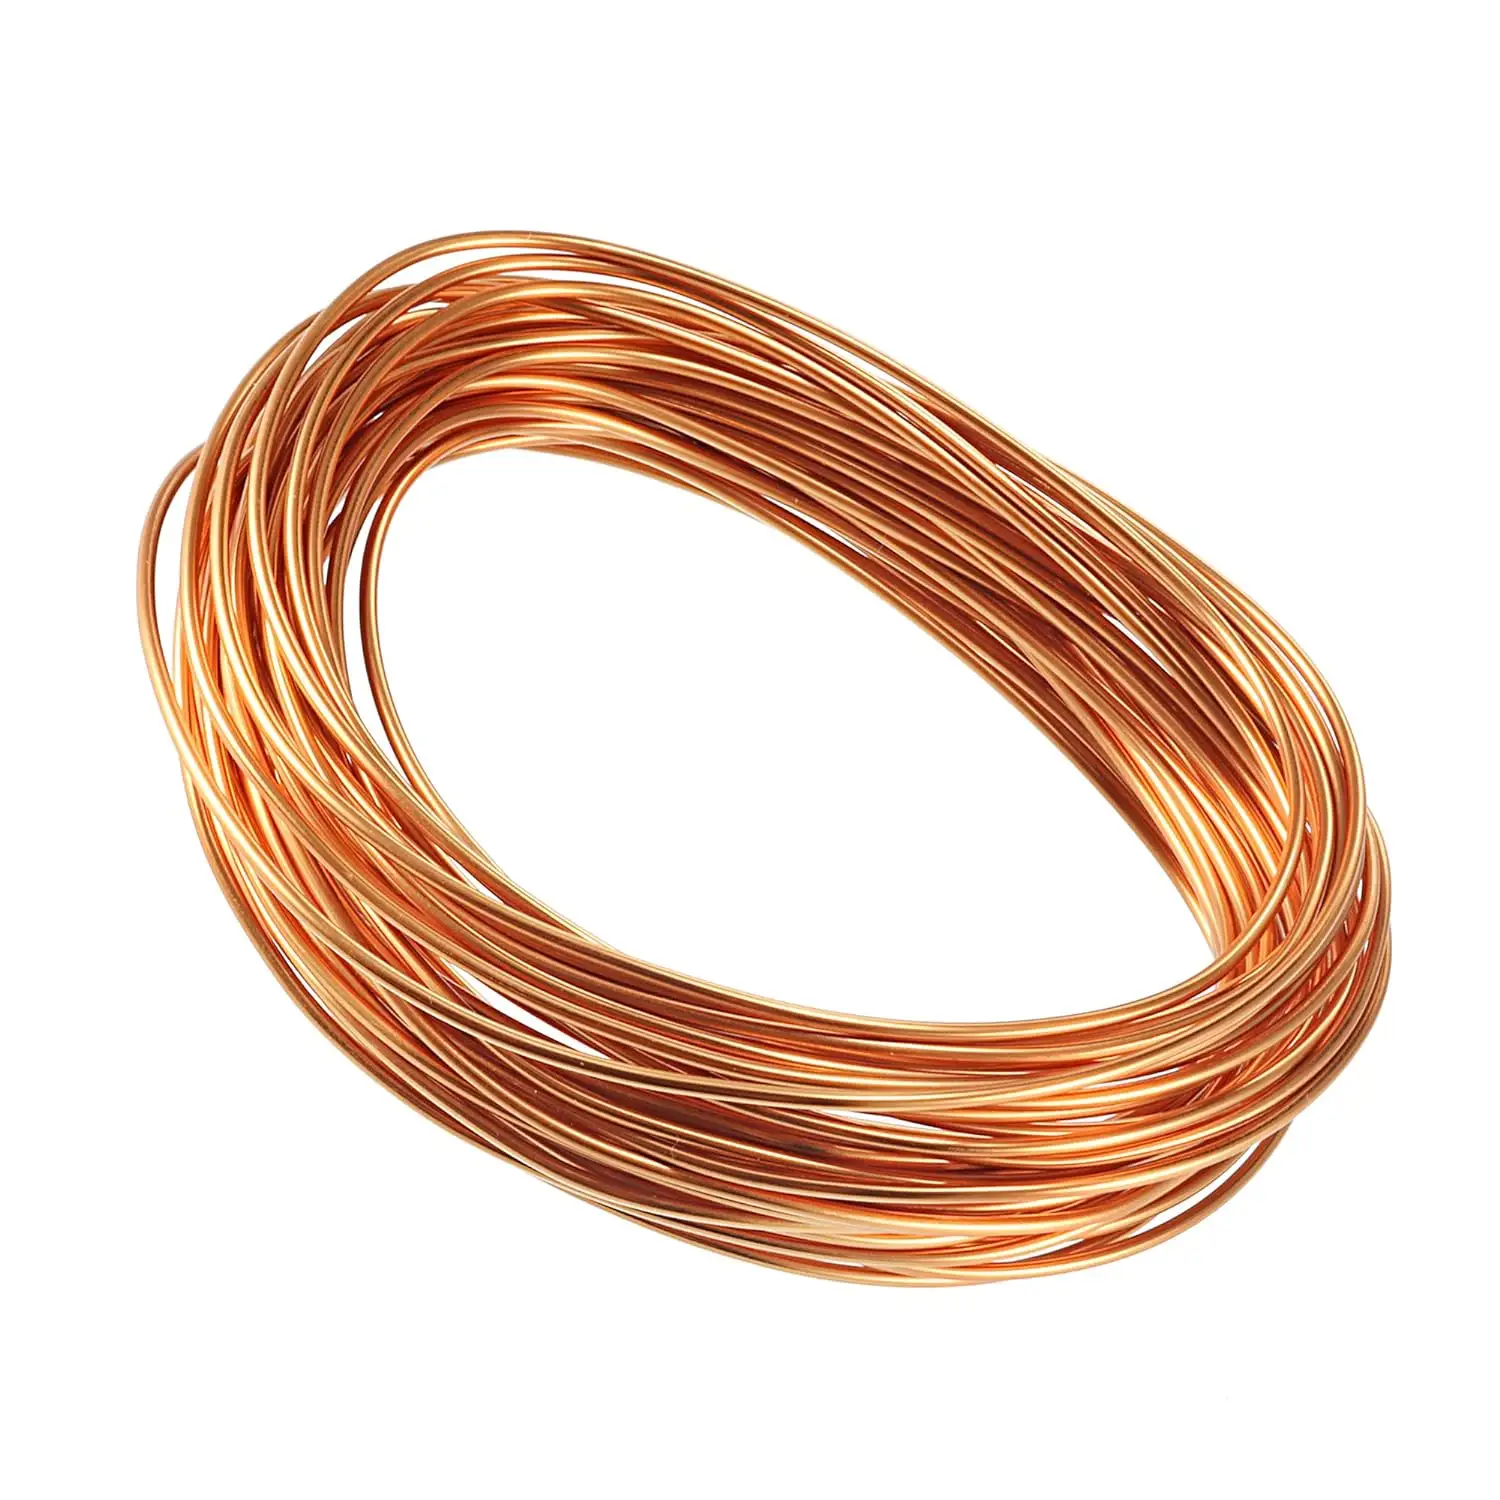 Nossa empresa fornece sucata de cobre adequada para uso em trabalhos elétricos, você pode obtê-la de nós a um preço muito baixo